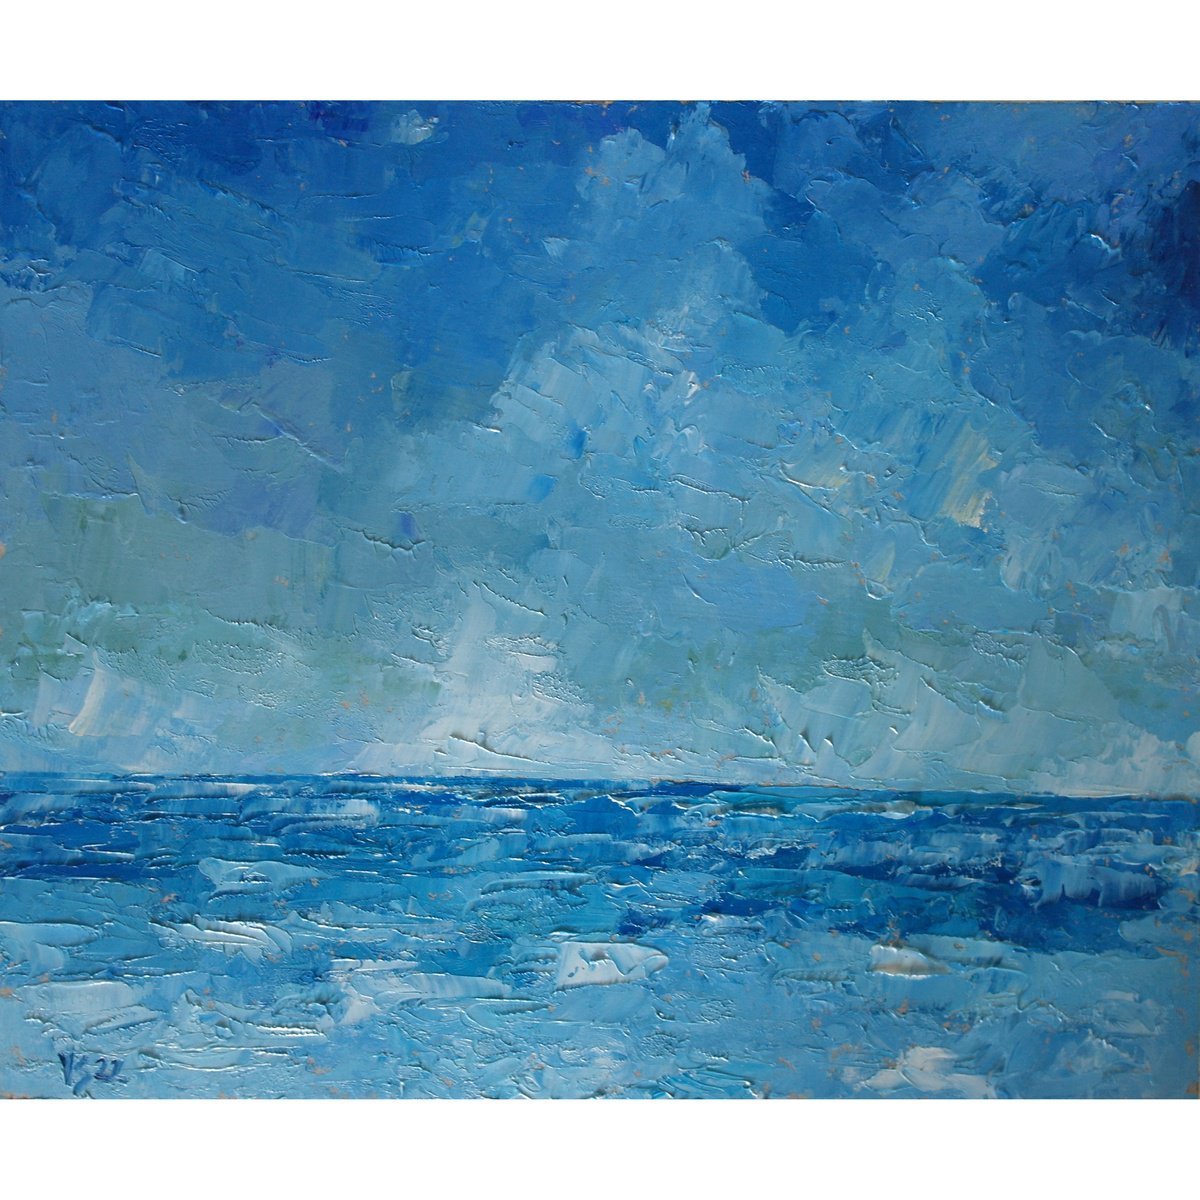 Blue Seascape. by Juri Semjonov